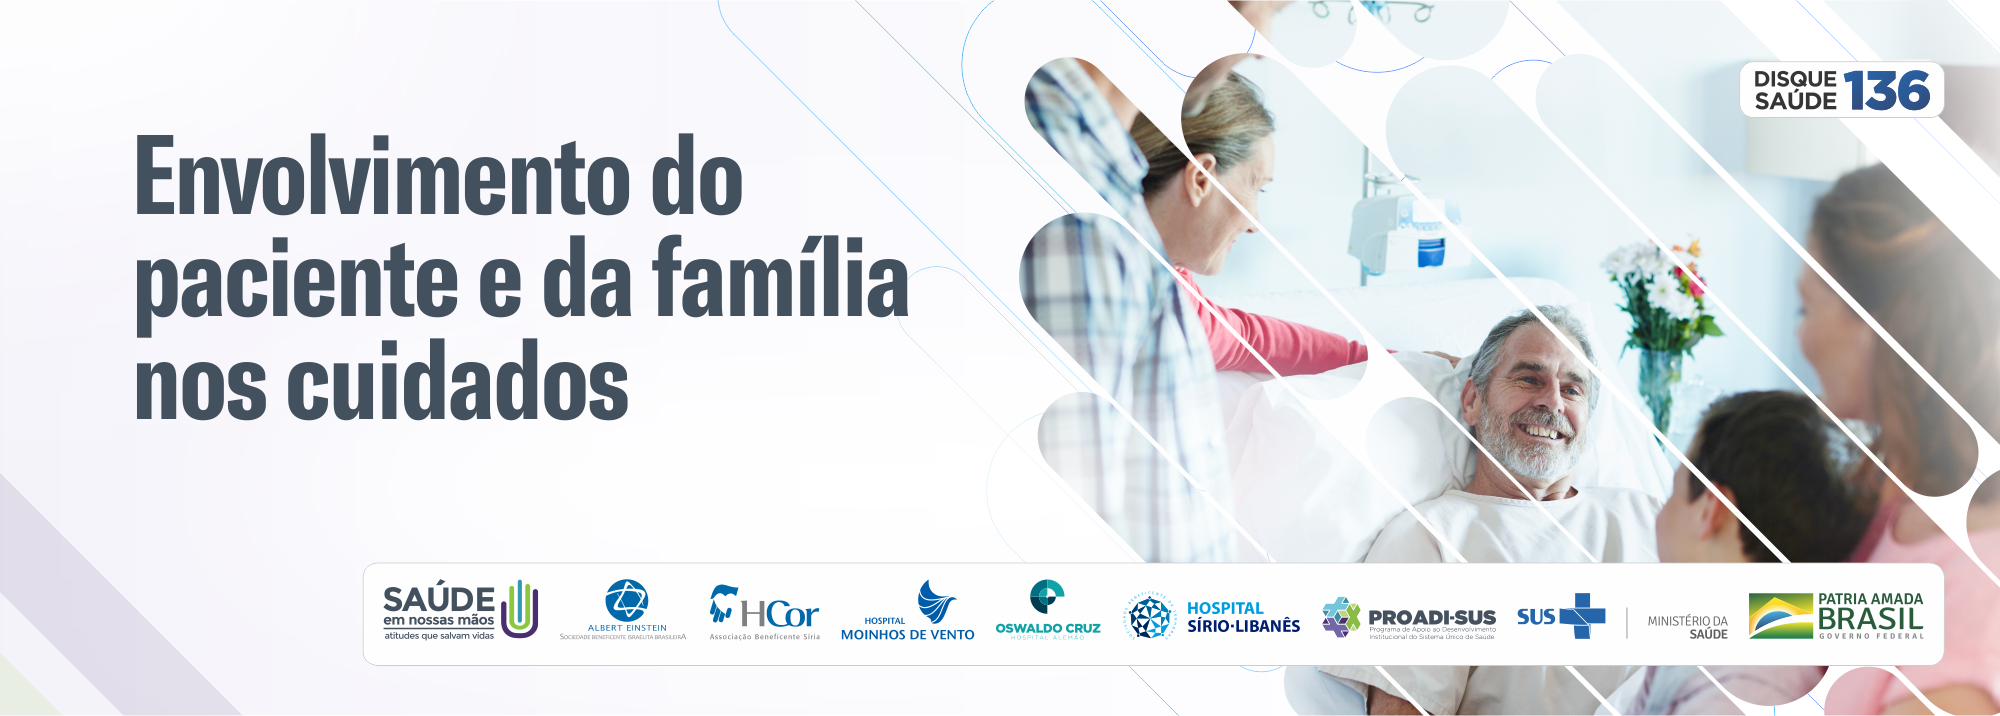 Envolvimento do paciente e da família nos cuidados Col_2020_EPFC